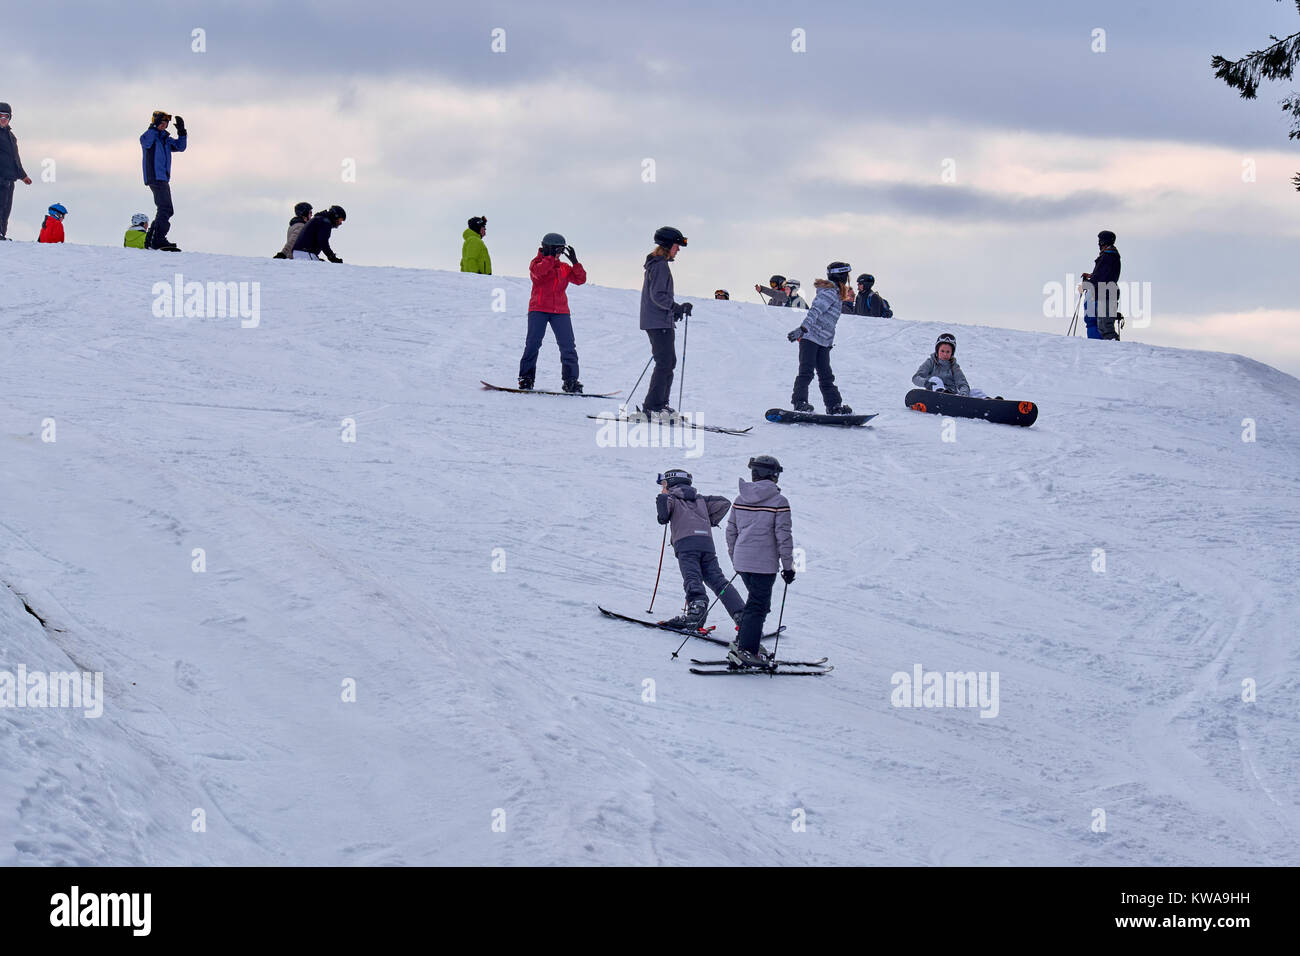 WINTERBERG, ALLEMAGNE - 16 février 2017 : Beaucoup de gens sur des skis et snowboards sur le sommet d'une montagne de ski de Winterberg Carrousel Banque D'Images